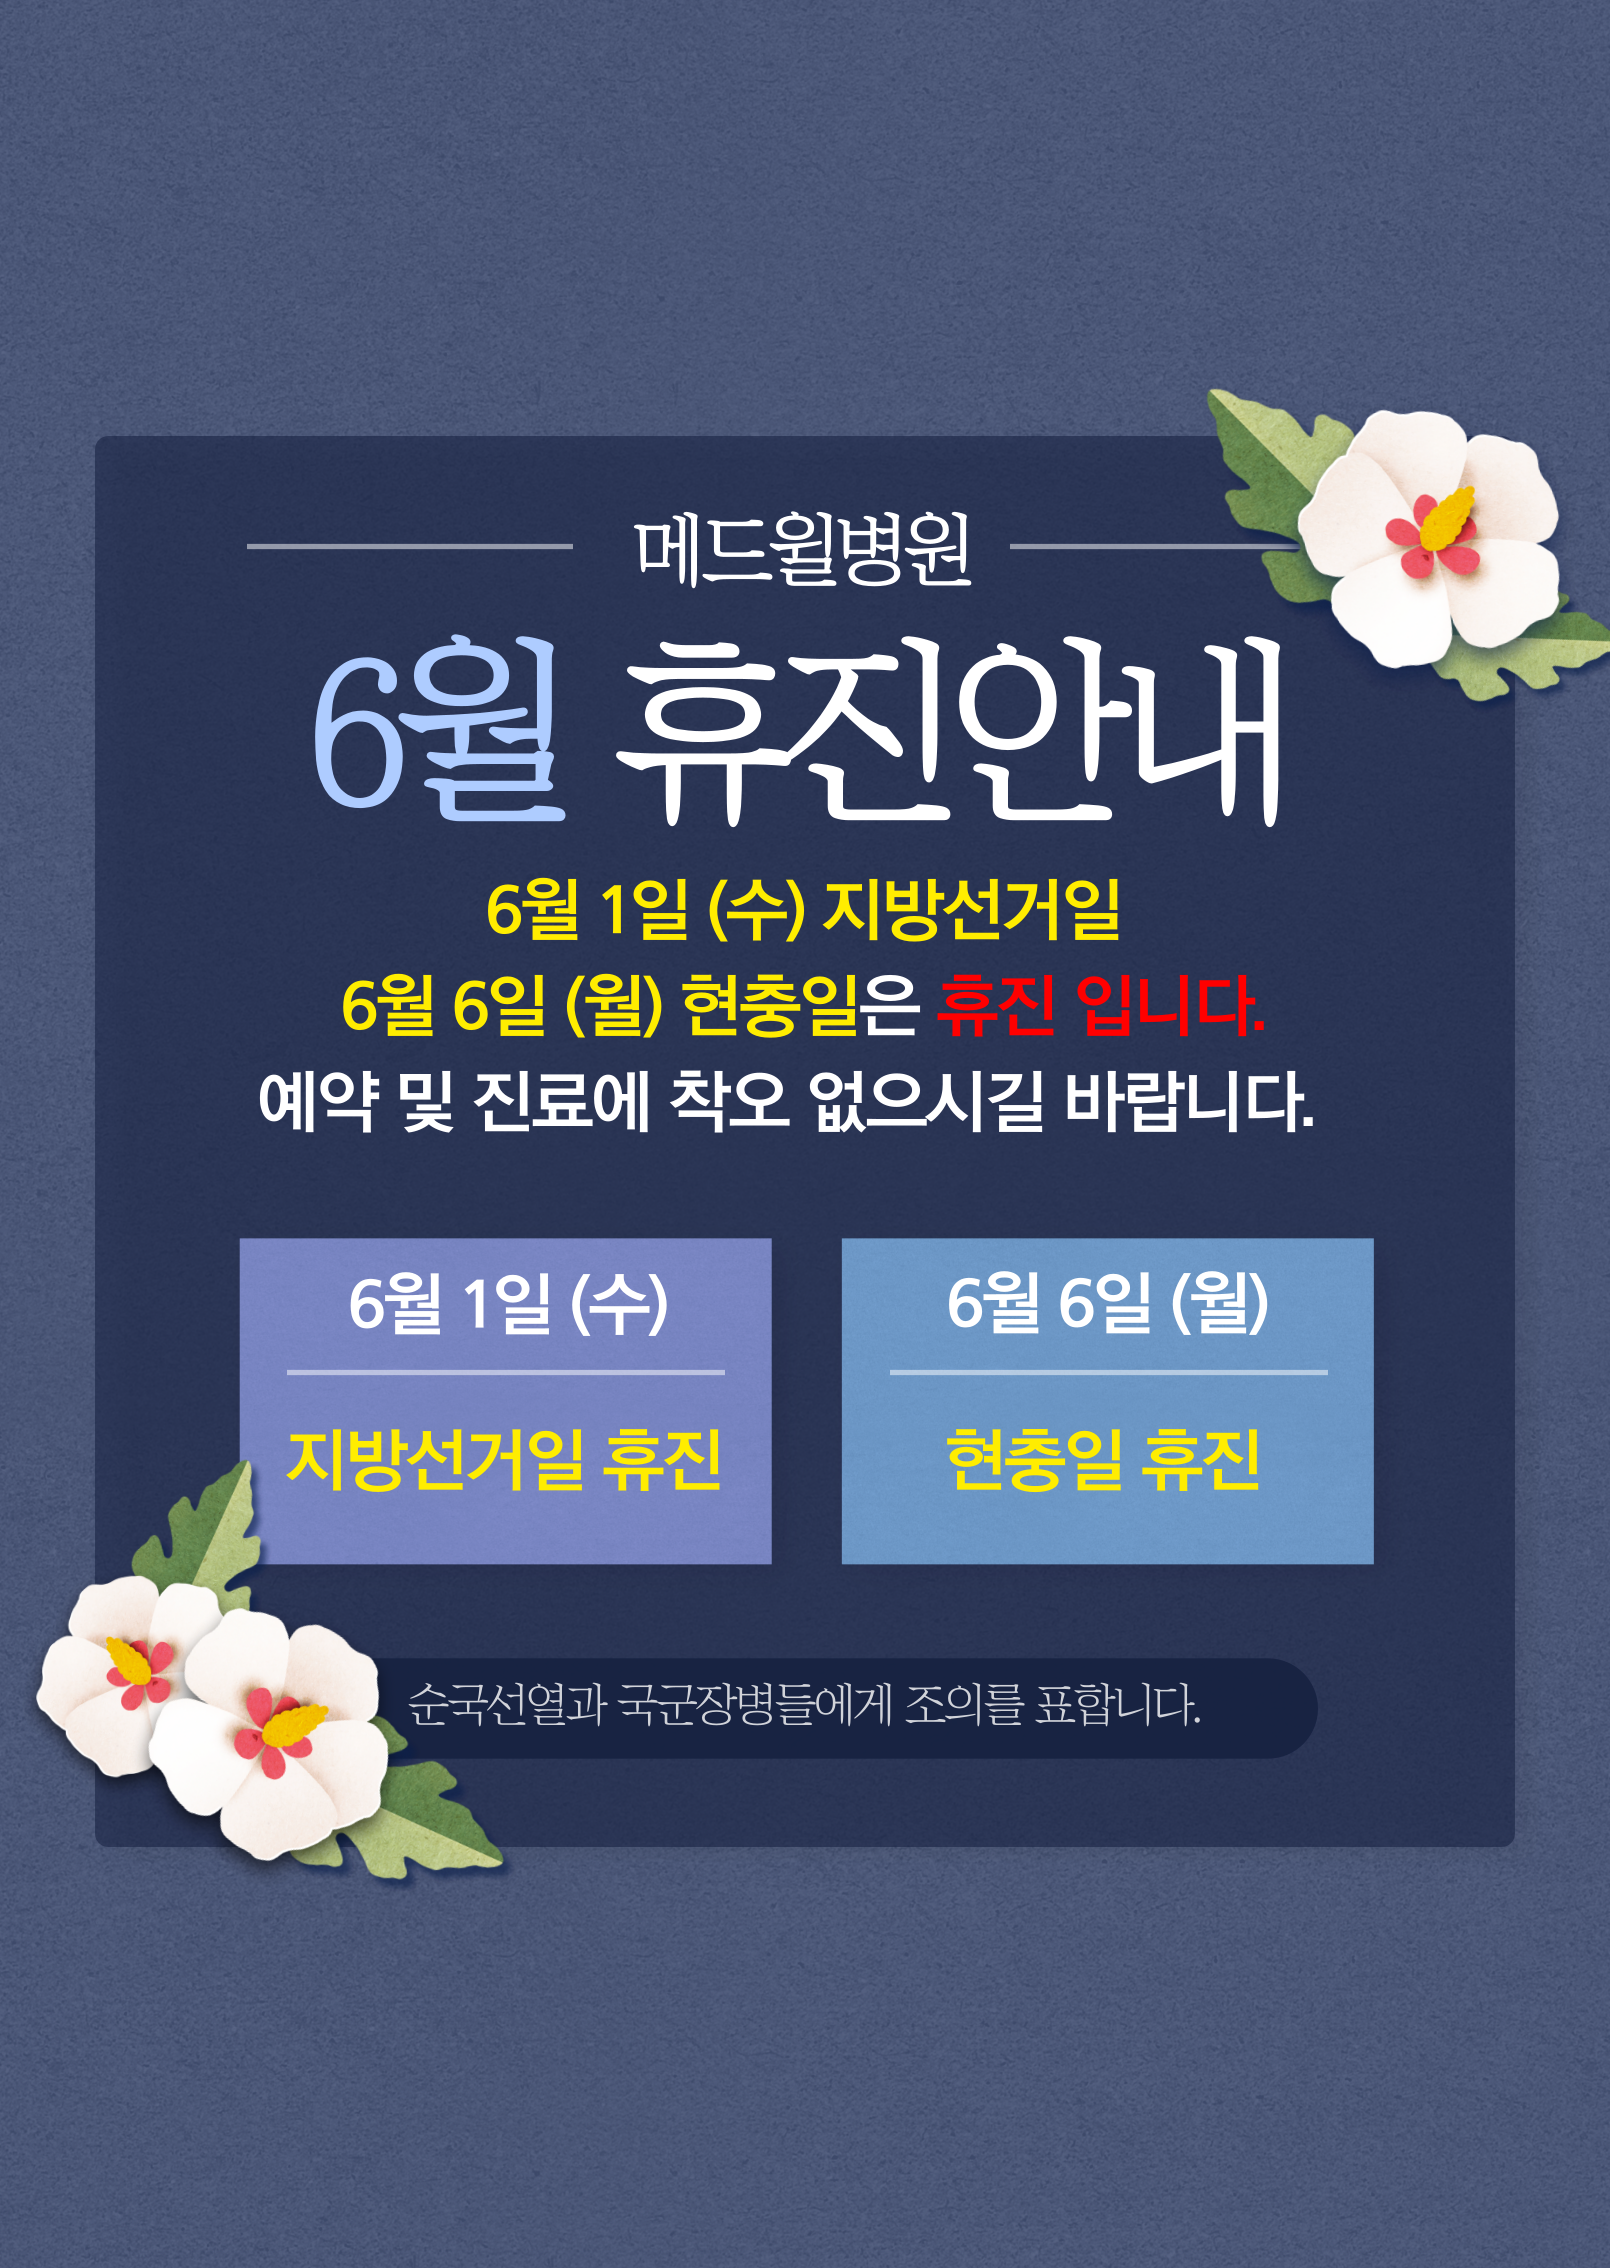 220526 6월휴진일정안내_팝업창.png